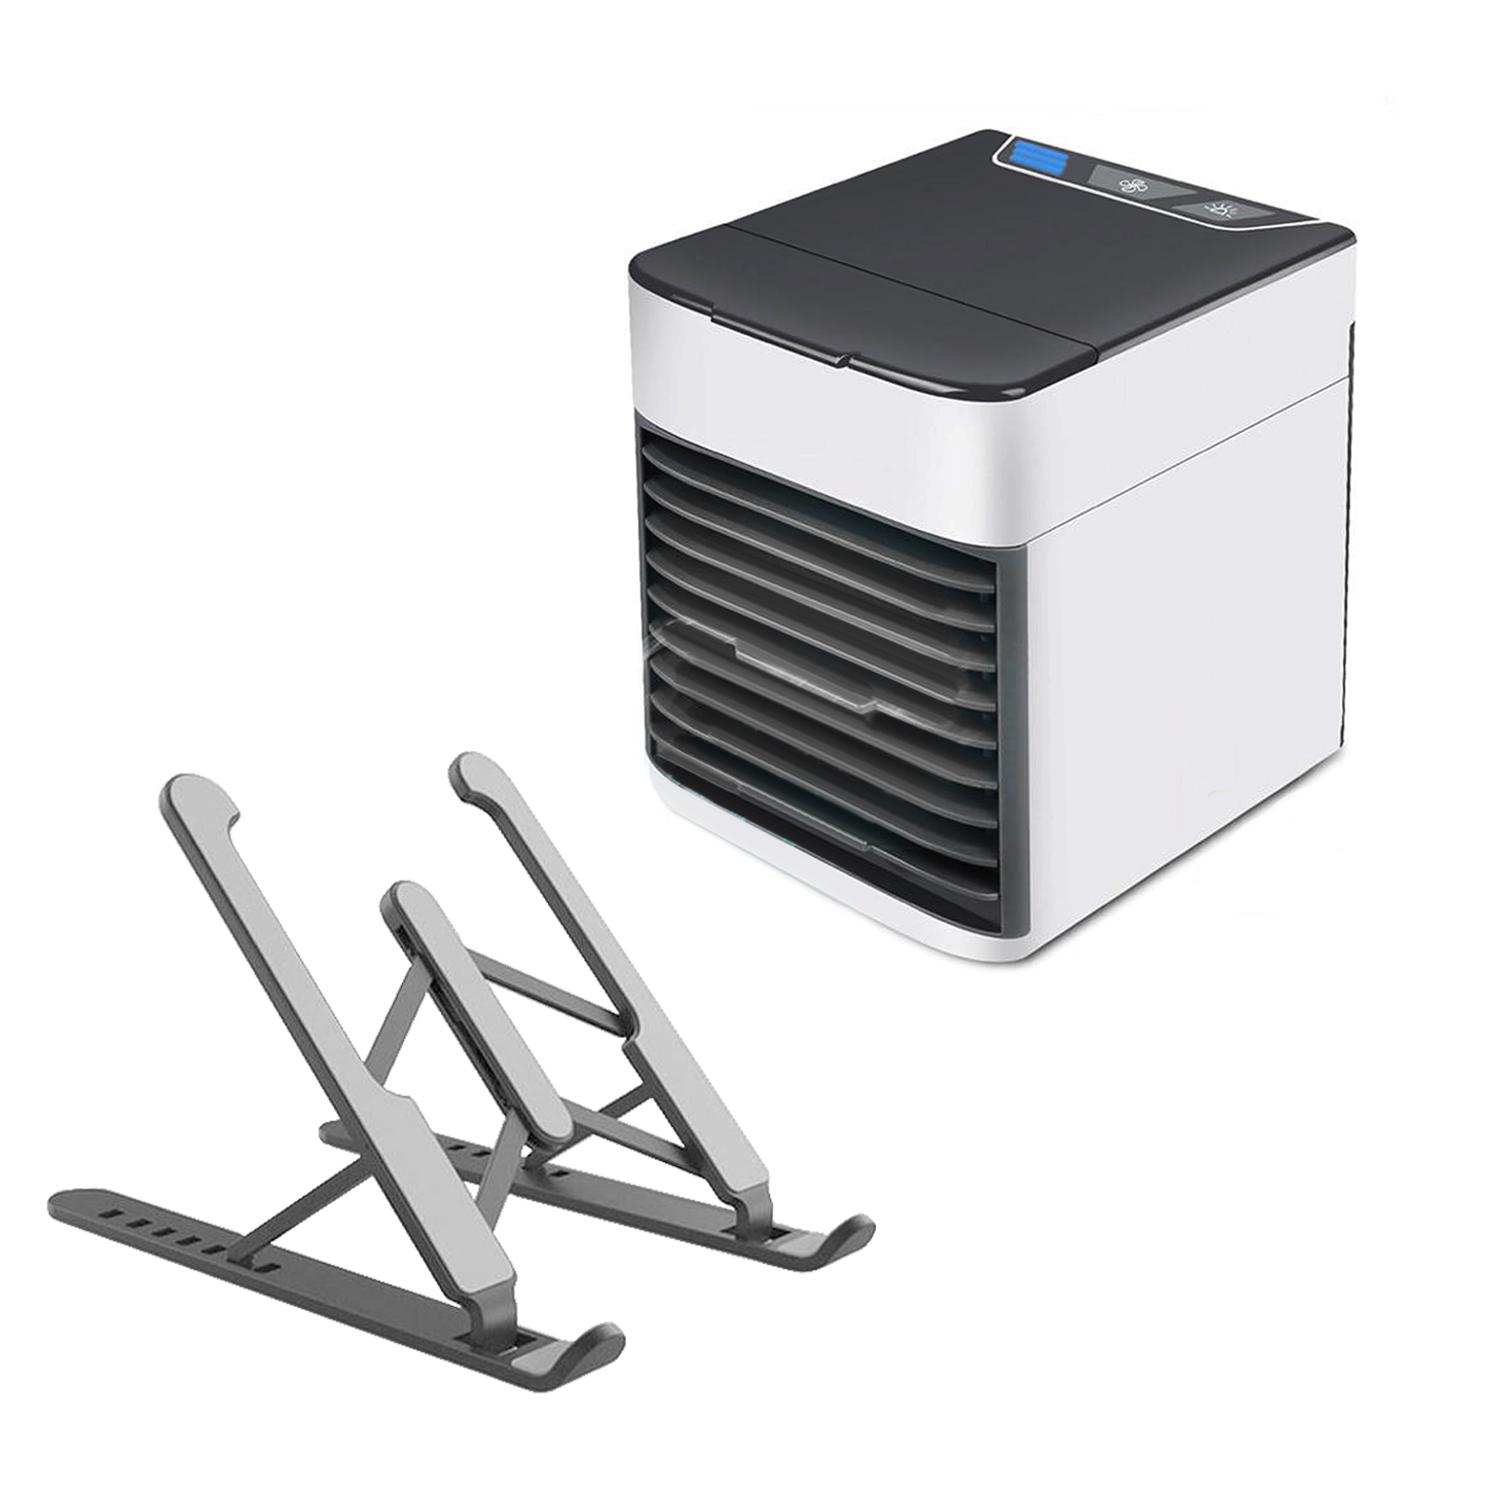 Мини кондиционер Cold Air Ultra портативный c функциями увлажнения воздуха и подставкой для ноутбука